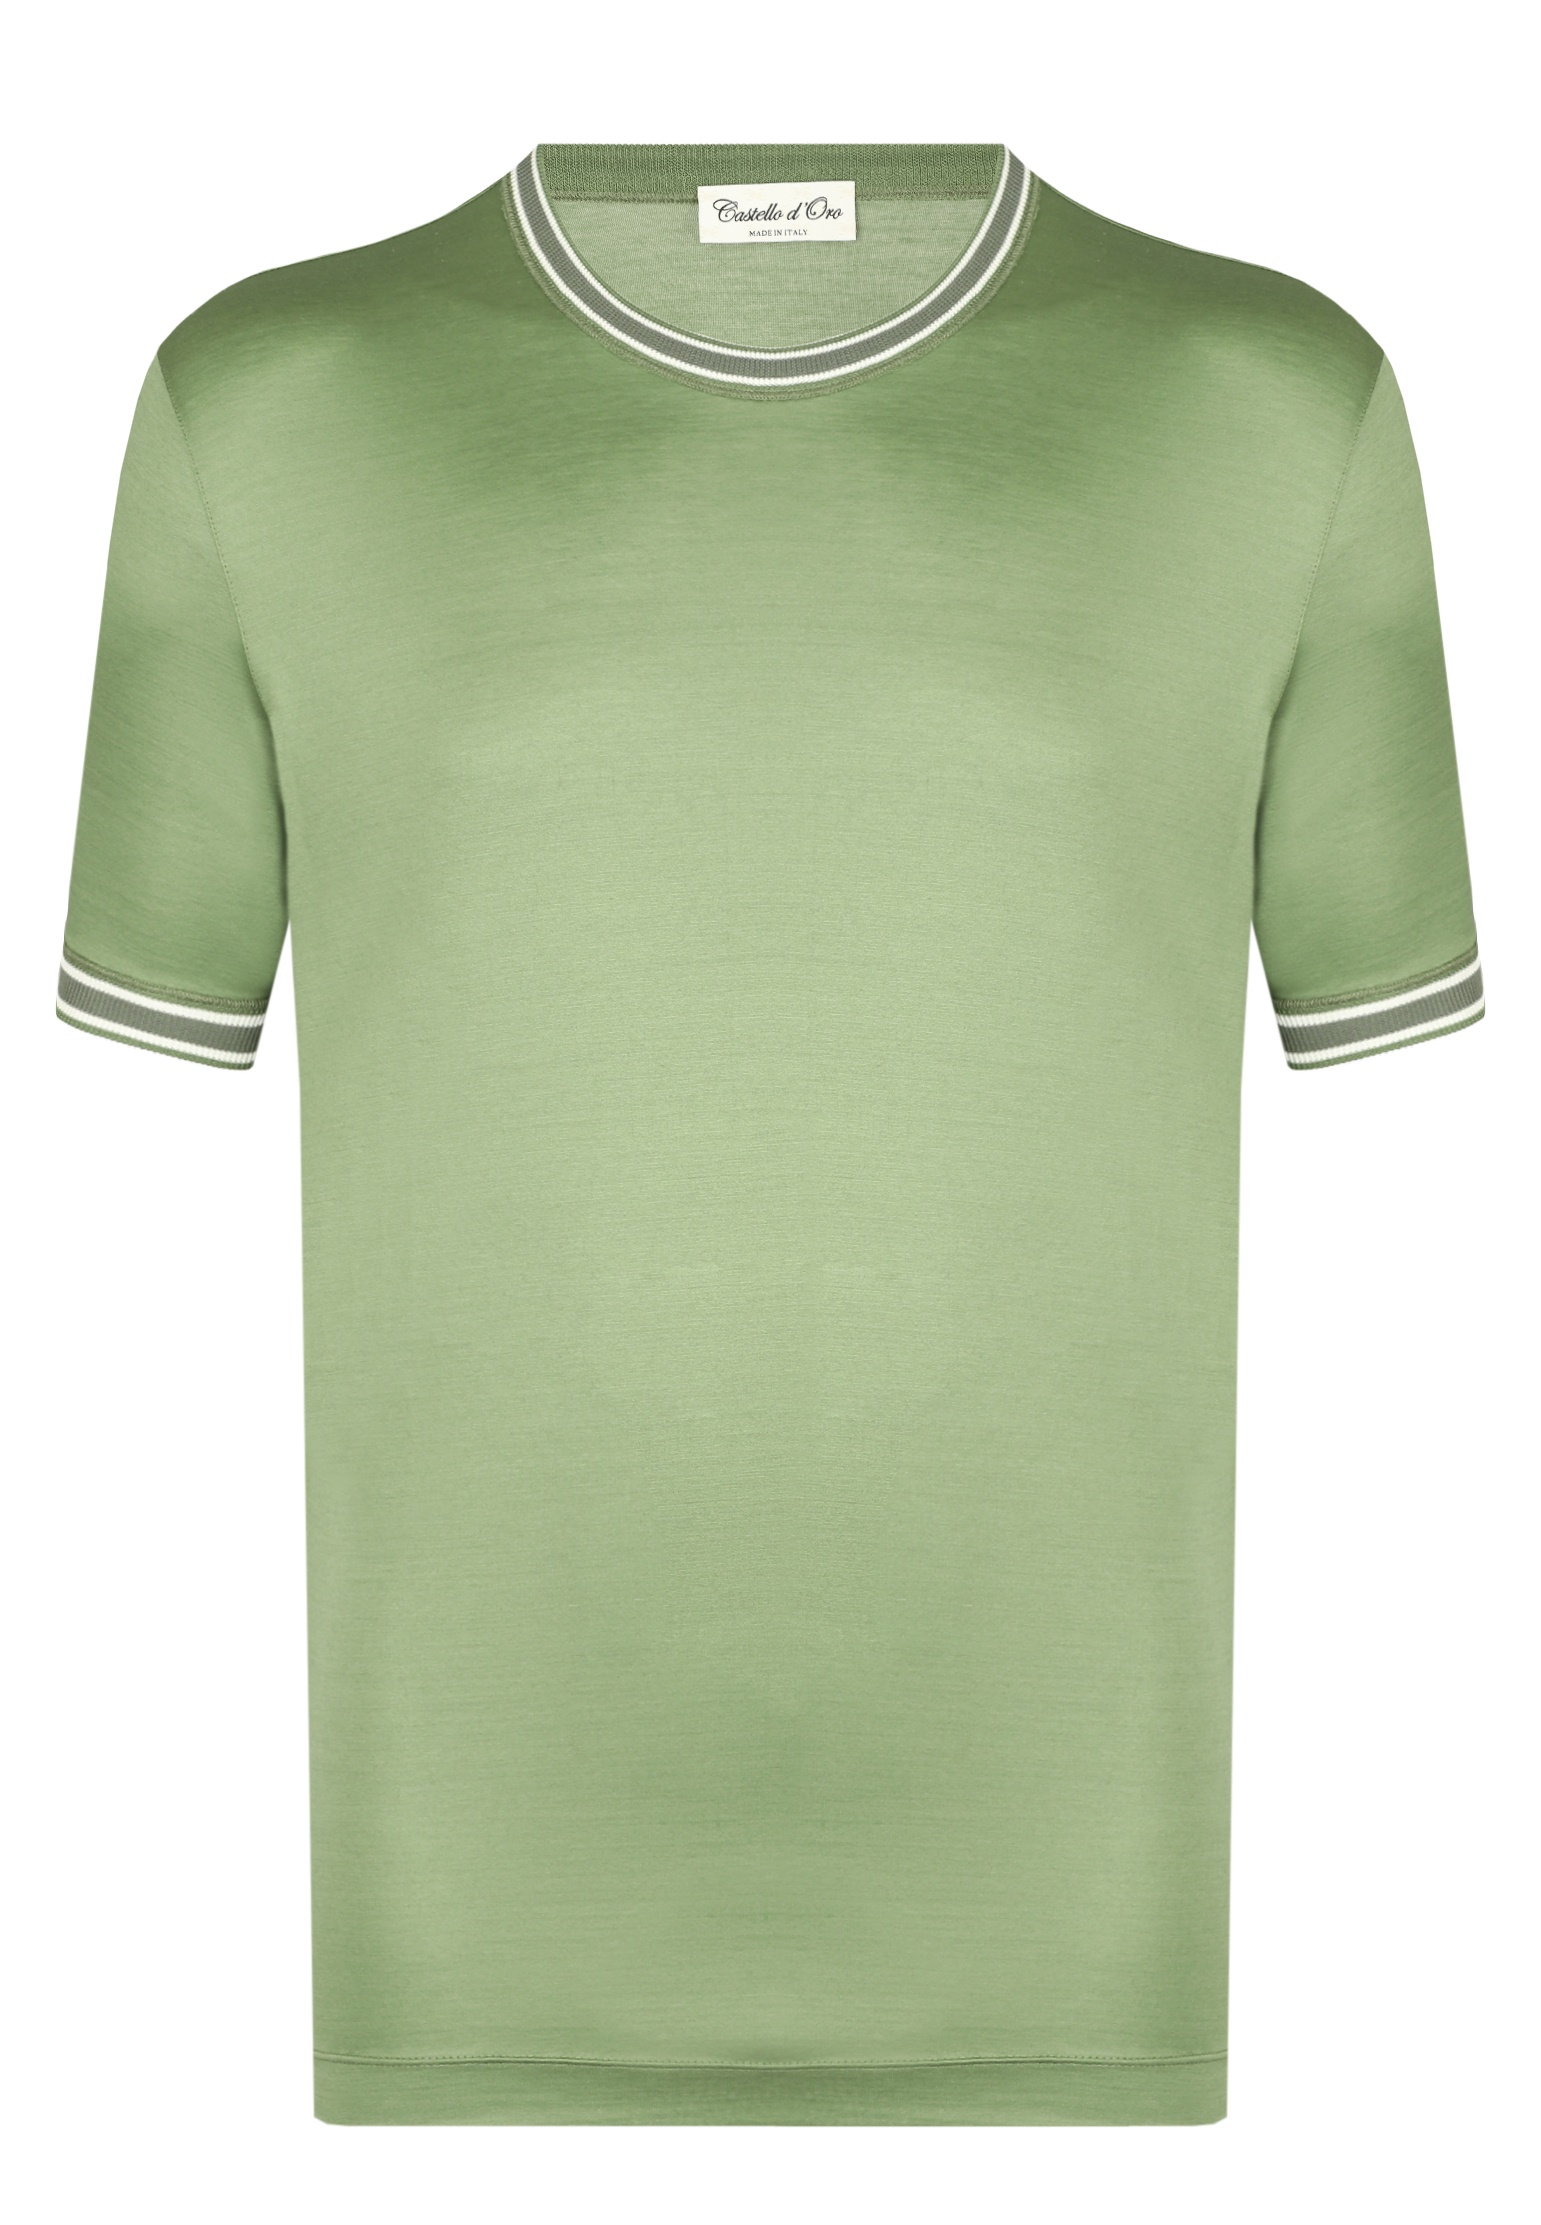 мужская футболка castello d’oro, зеленая